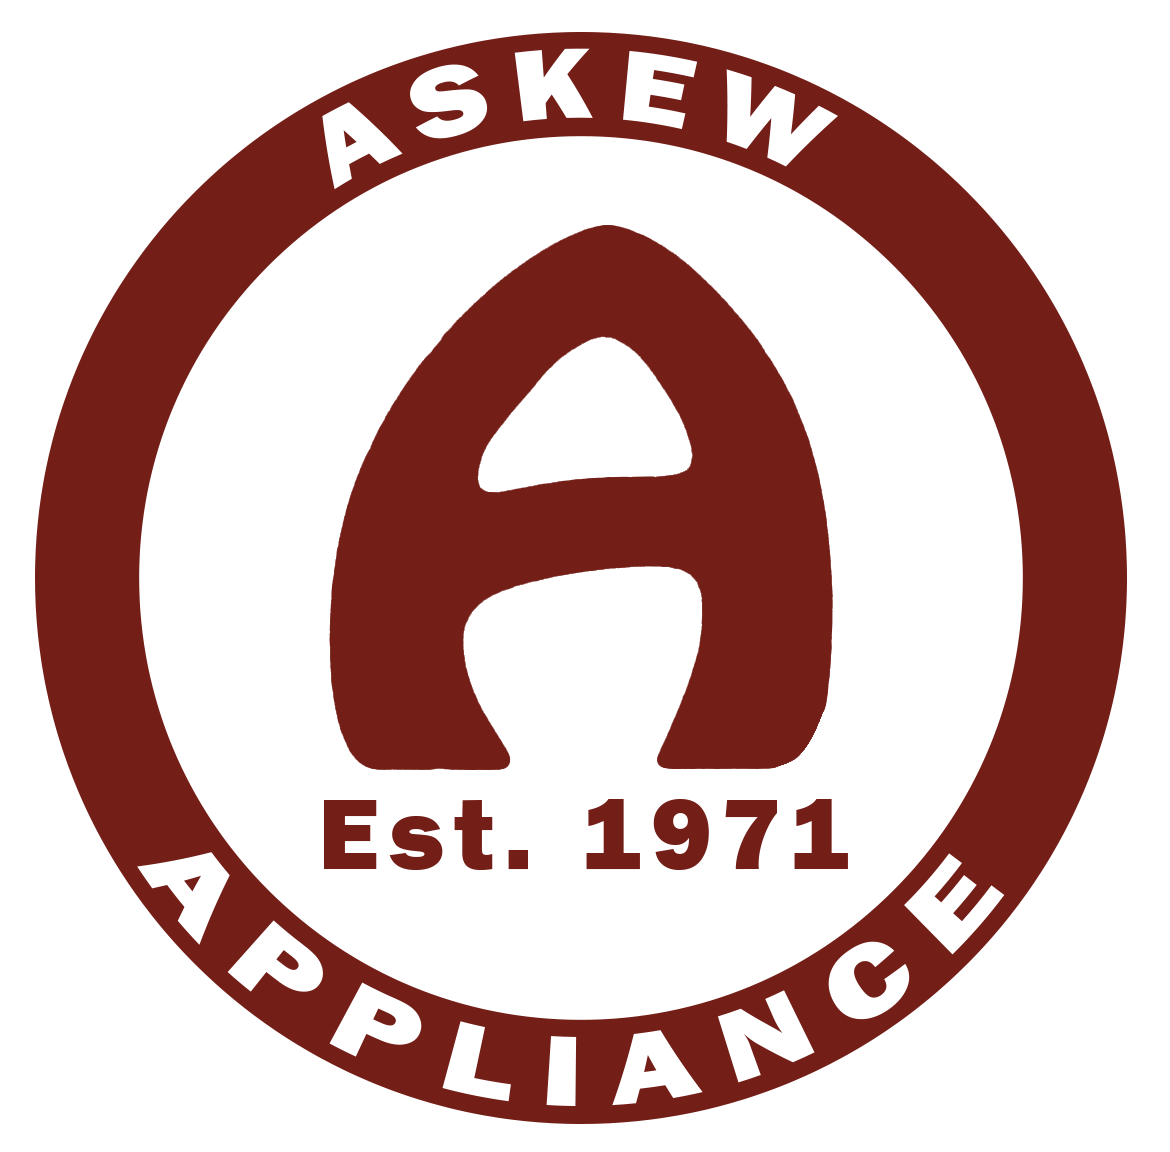 Askew Appliance